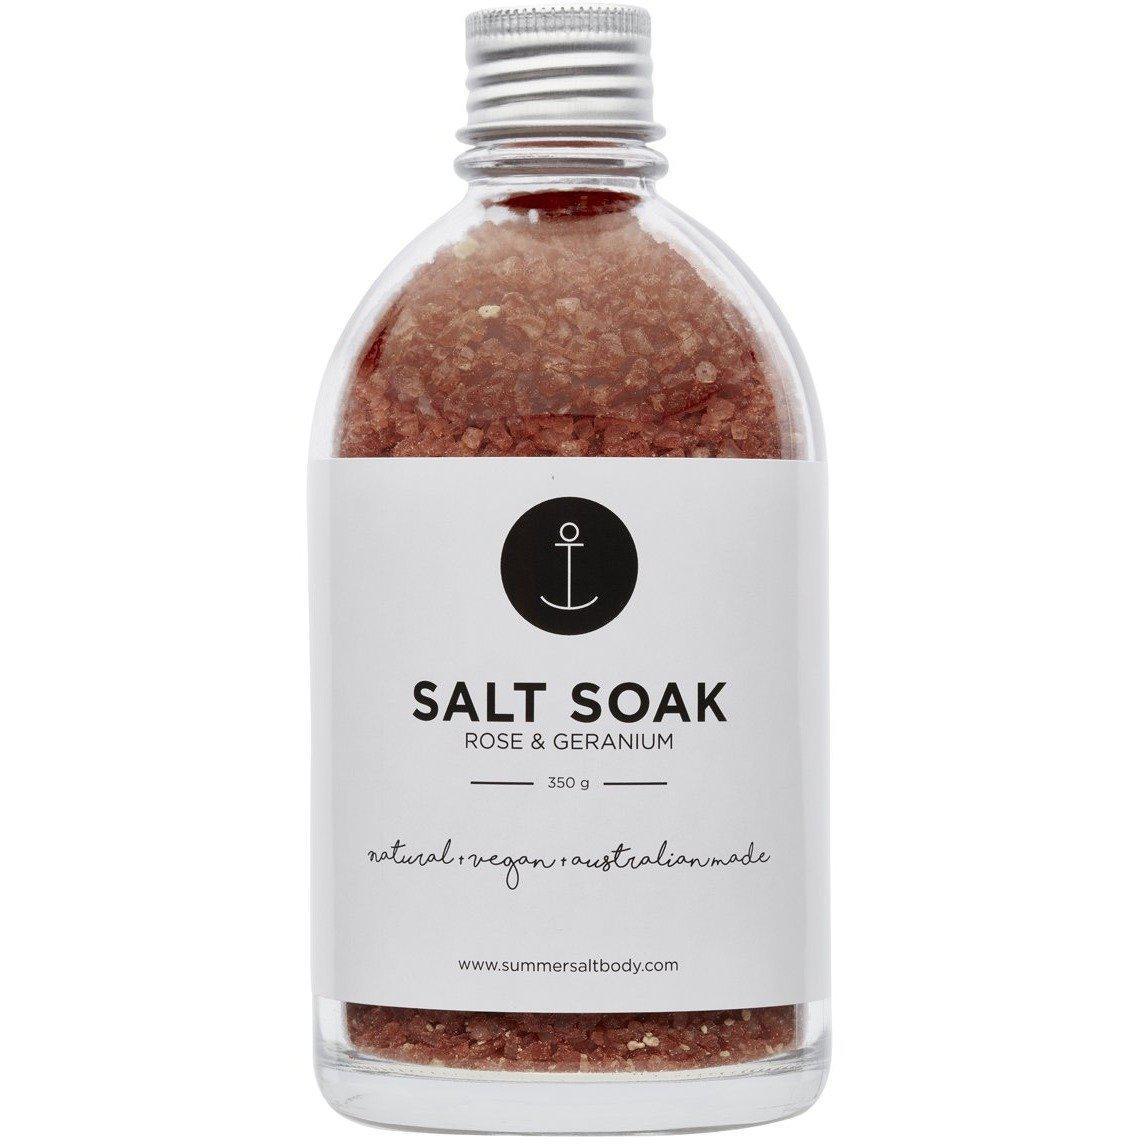 Salt Soak | Rose & Geranium - 350g-Beauty & Well-Being-Summer Salt Body-The Bay Room